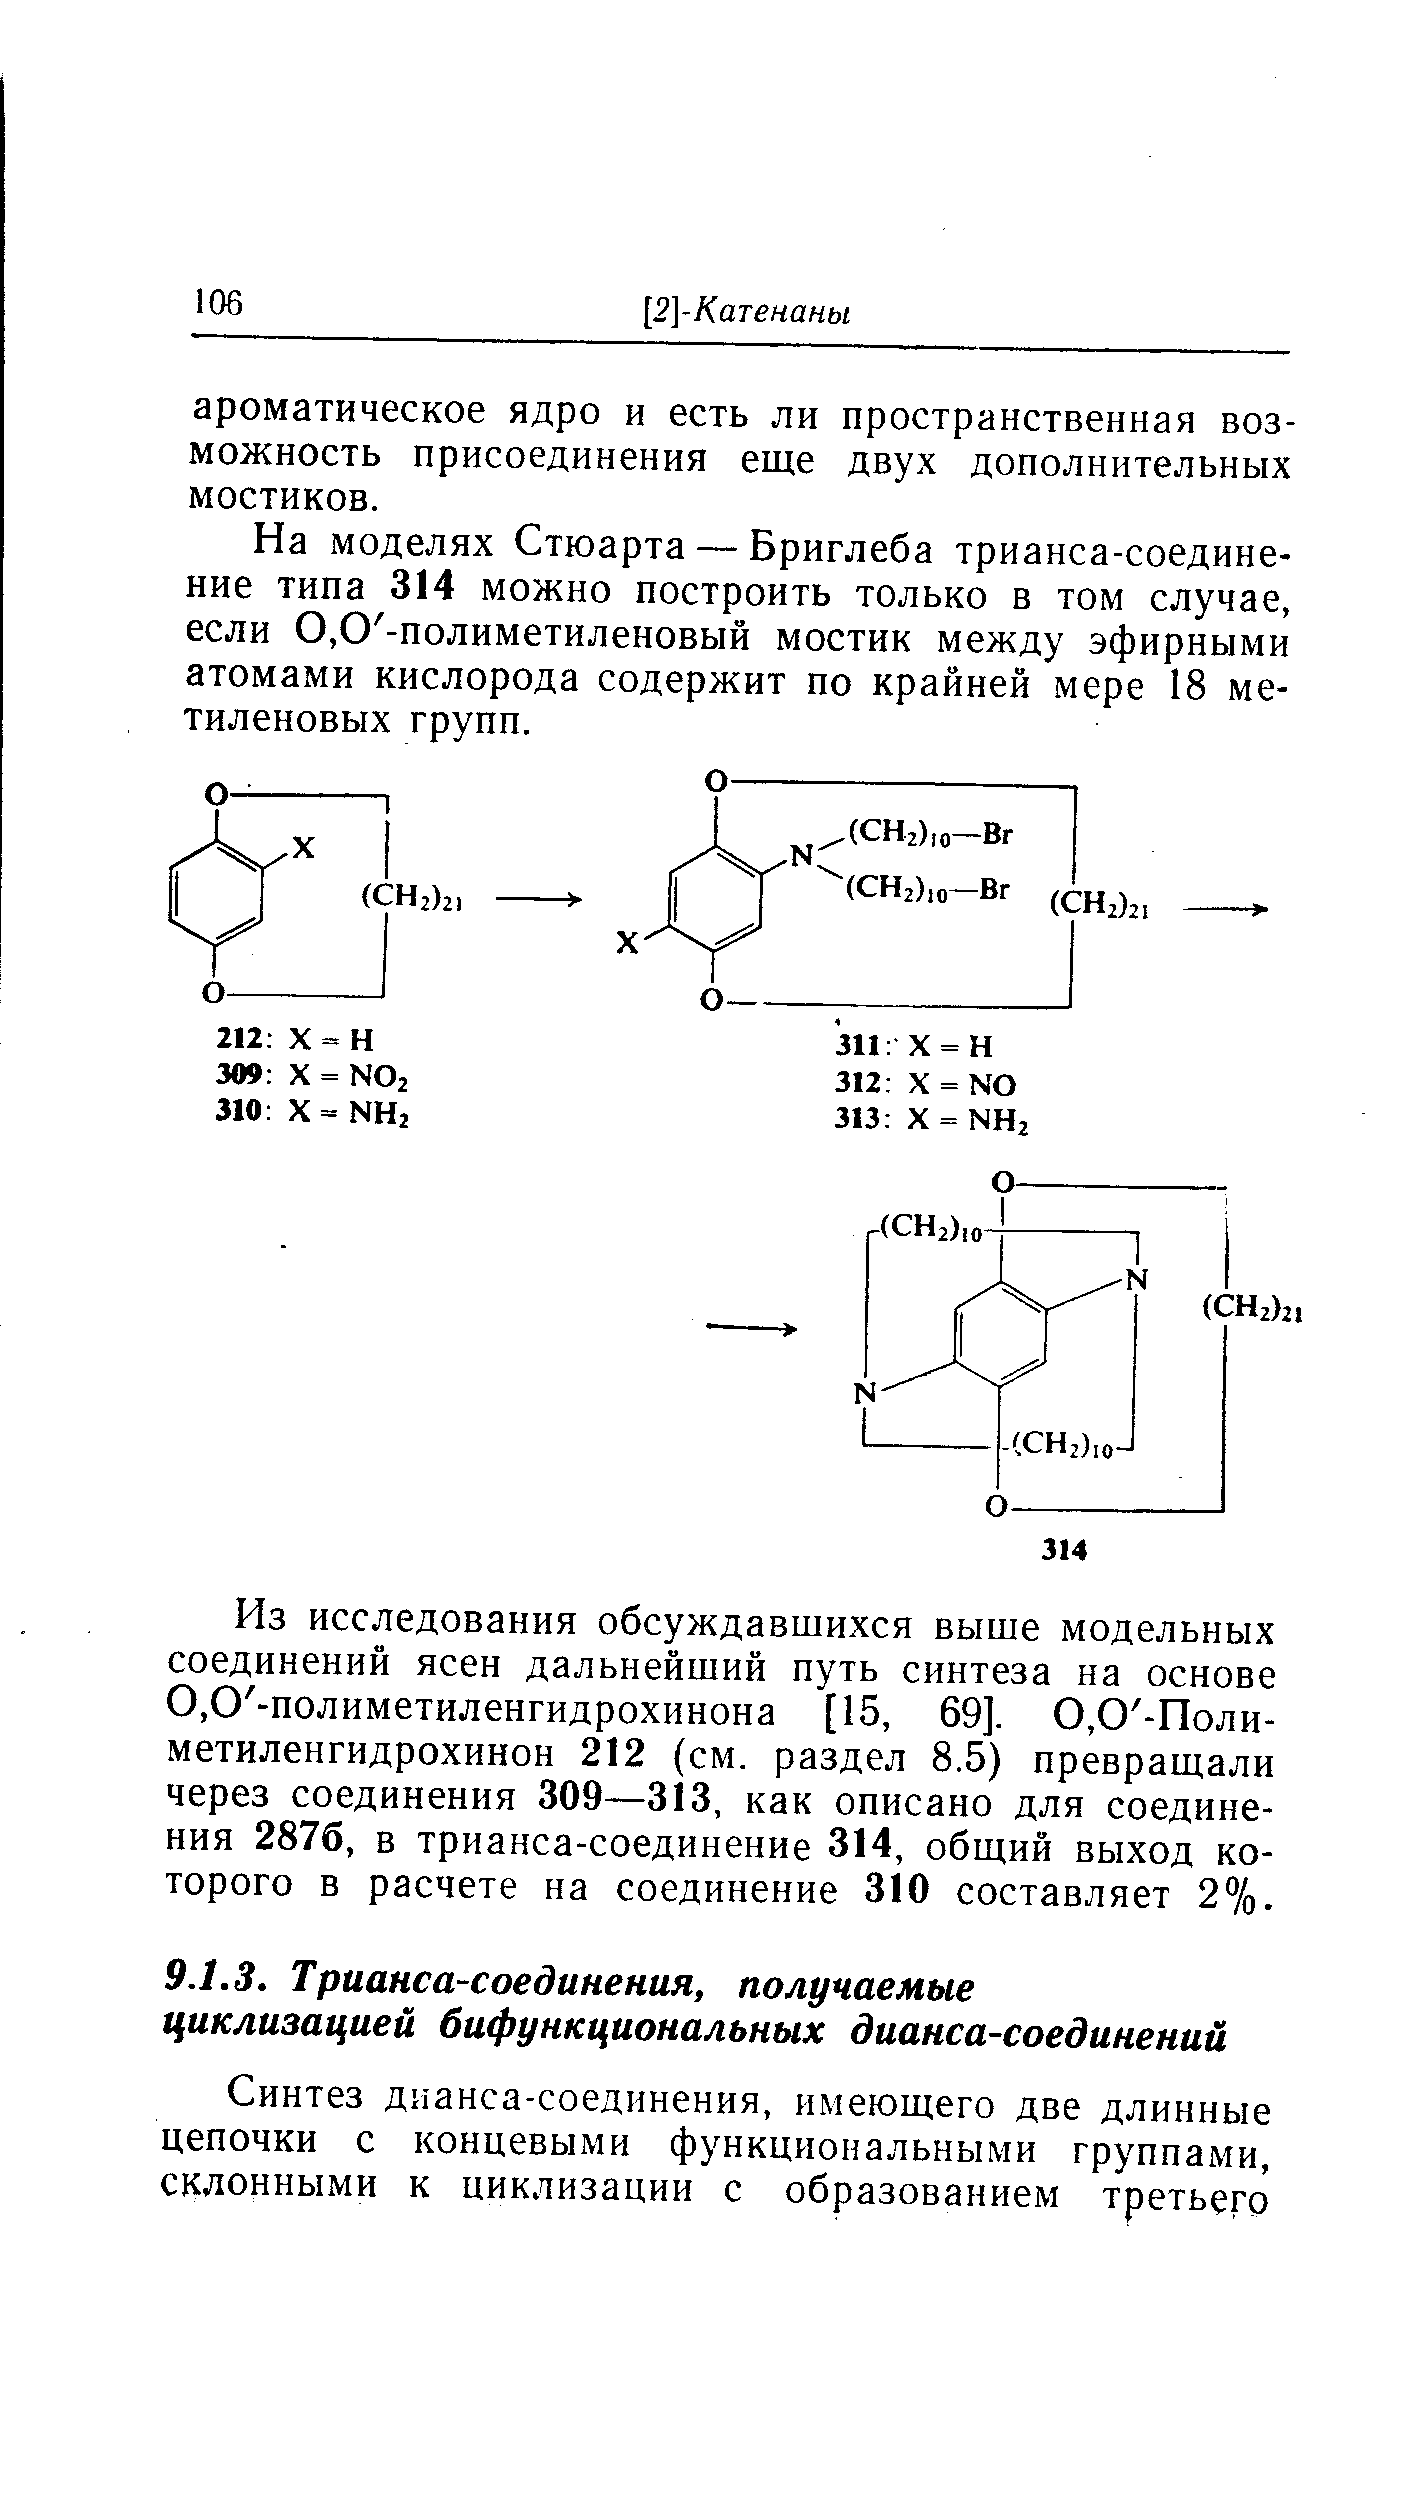 На моделях Стюарта — Бриглеба трианса-соединение типа 314 можно построить только в том случае, если 0,0 -полиметиленовый мостик между эфирными атомами кислорода содержит по крайней мере 18 метиленовых групп.